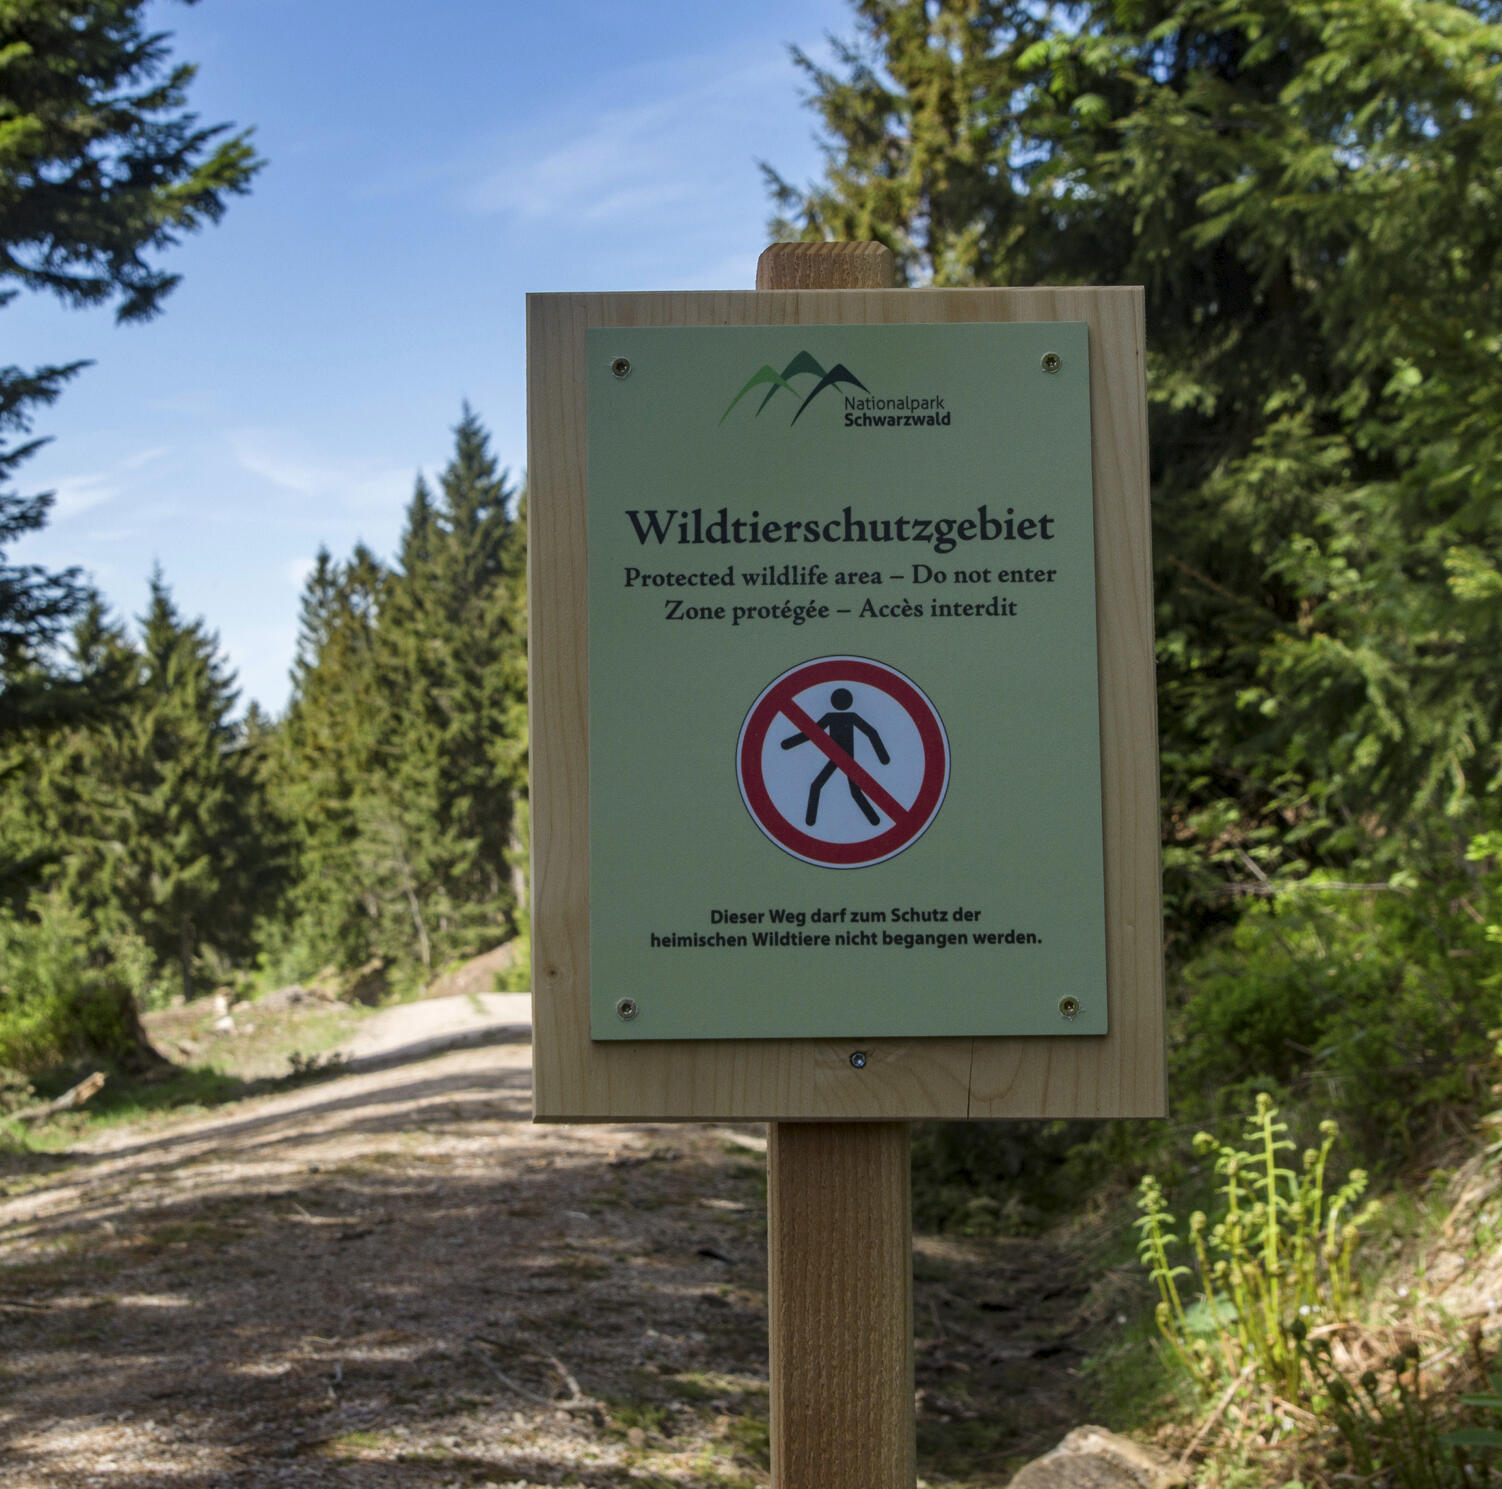 Schild mit der Aufschrift "Wildtierschutzgebiet", das eine Wegsperrung anzeigt.